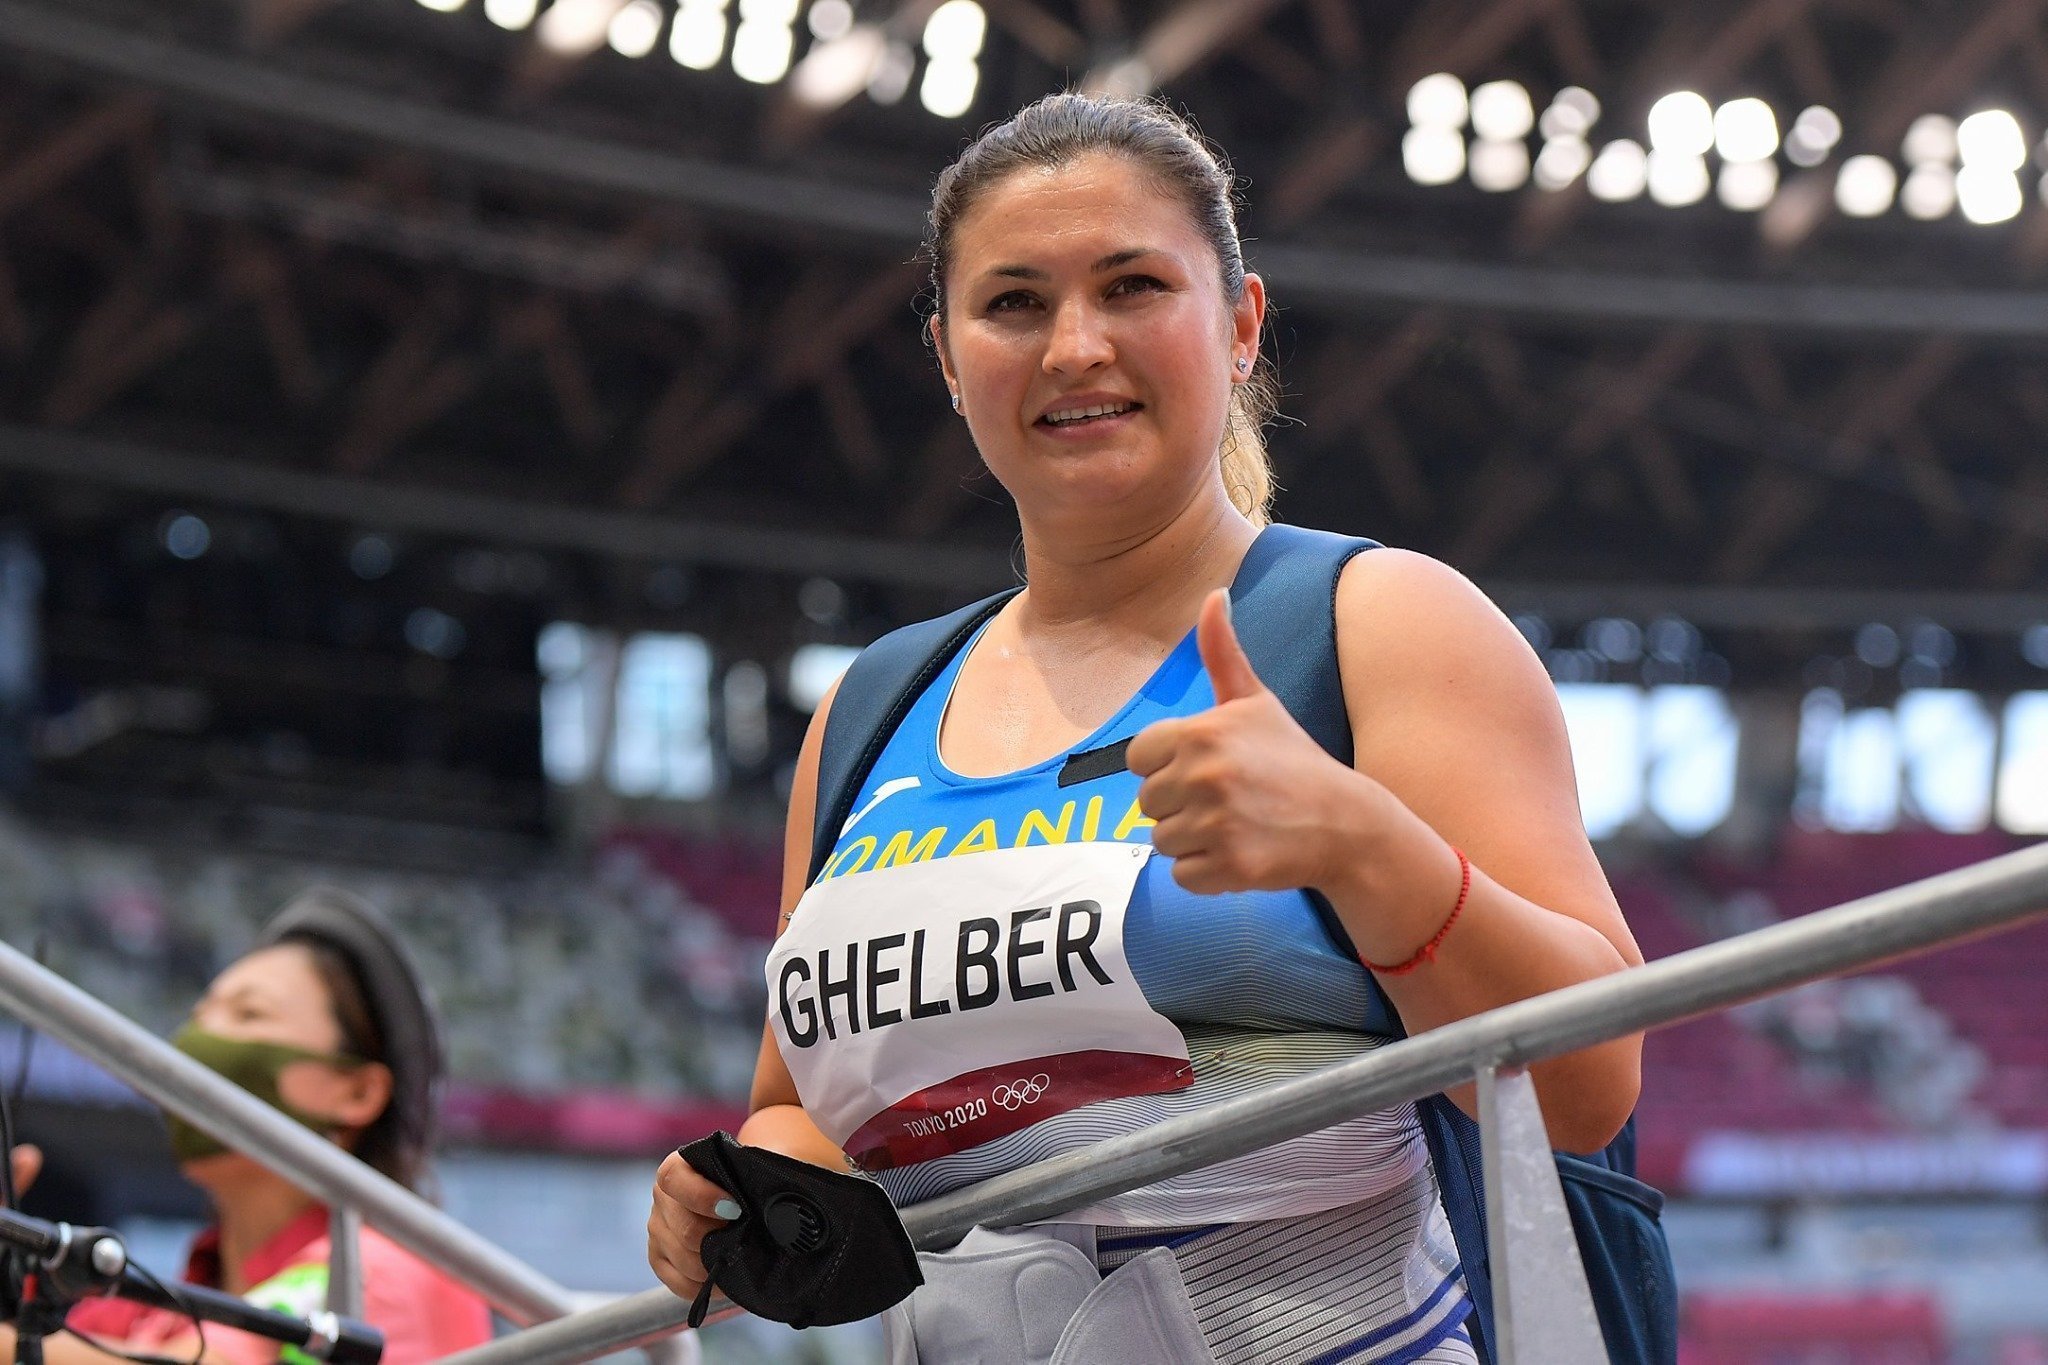 Jocurile Olimpice 2020 | Bianca Ghelber s-a calificat în finală, la aruncarea ciocanului